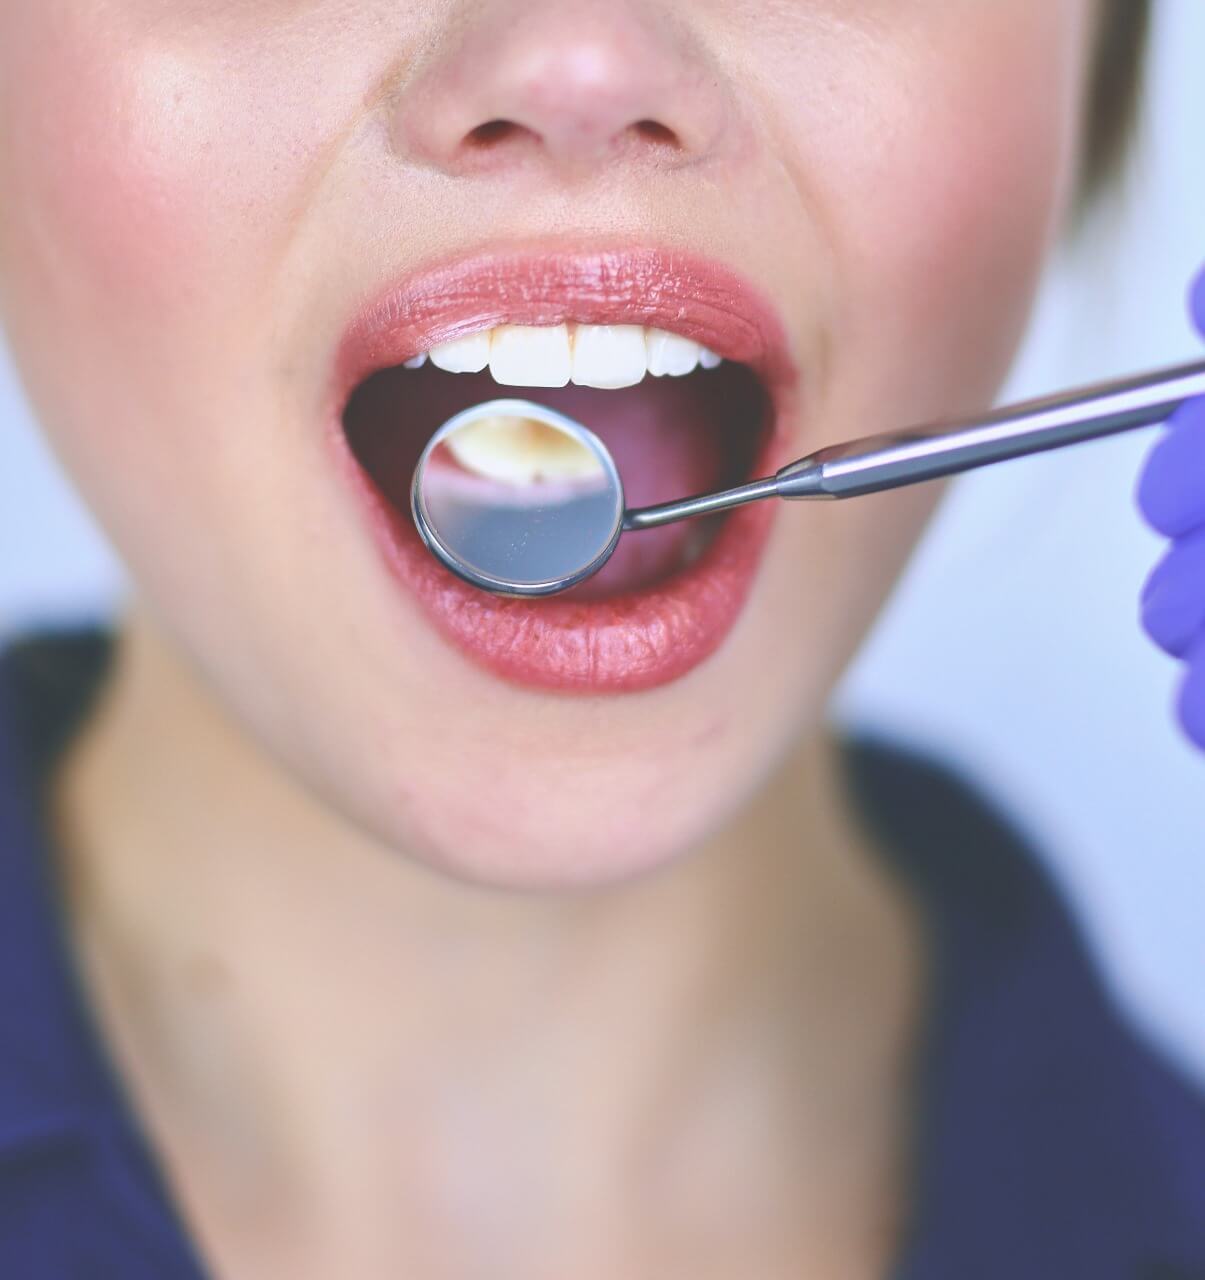 علاج أمراض اللثة للأسنان مركز الدكتور محمد عمارة لطب الاسنان Periodontitis (Gum Disease) Periodontal Disease Omara Dental Centers